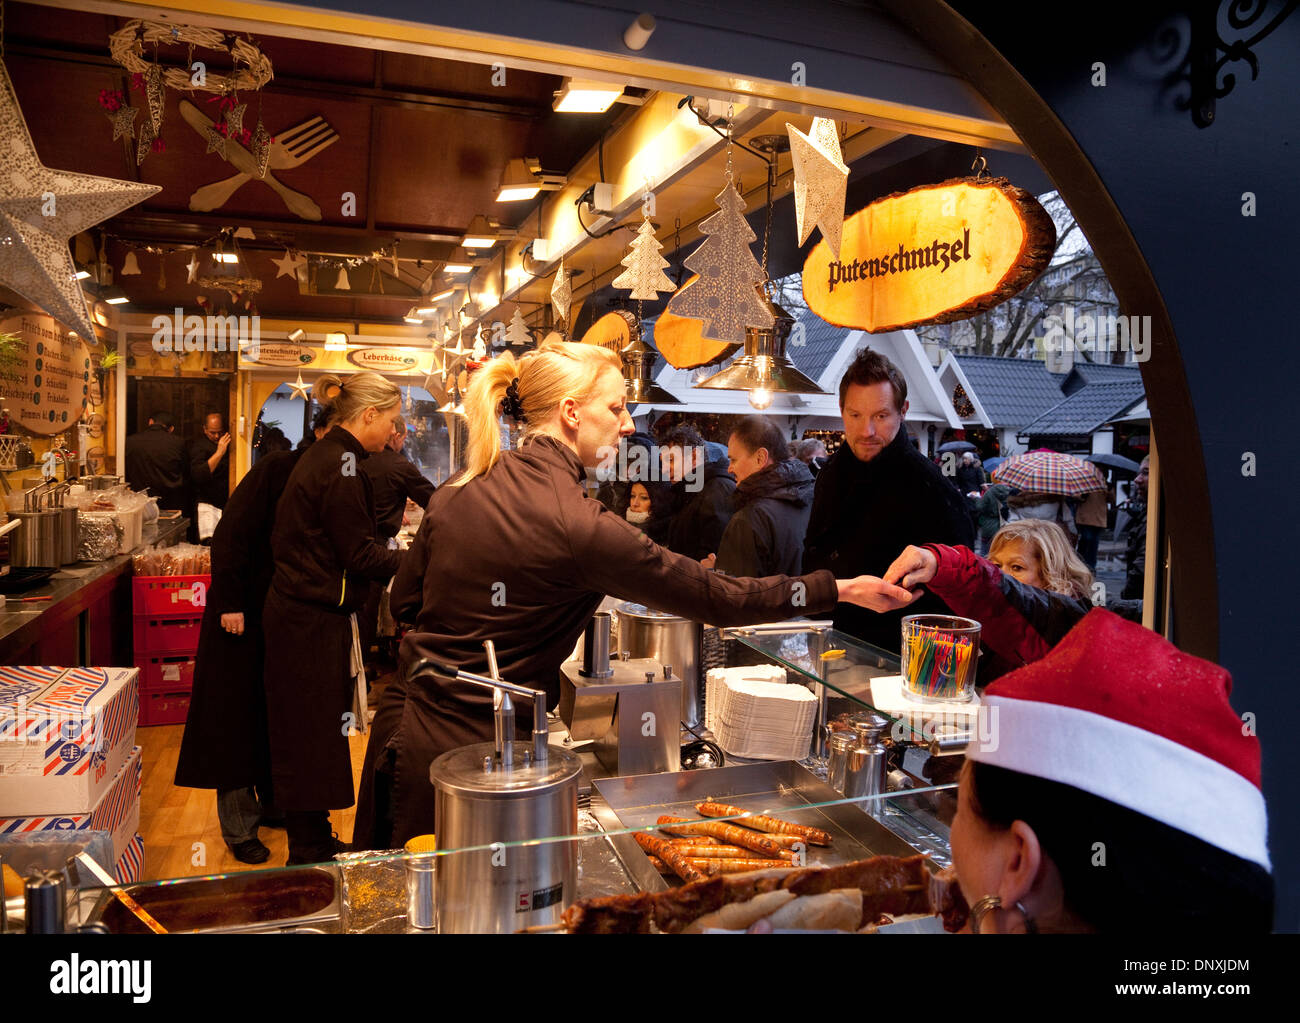 Weihnachtsmarkt Köln; Essen stall Verkauf Putenschnitzel (Putenfleisch), Kunden, Köln (Köln), Deutschland, Europa Stockfoto